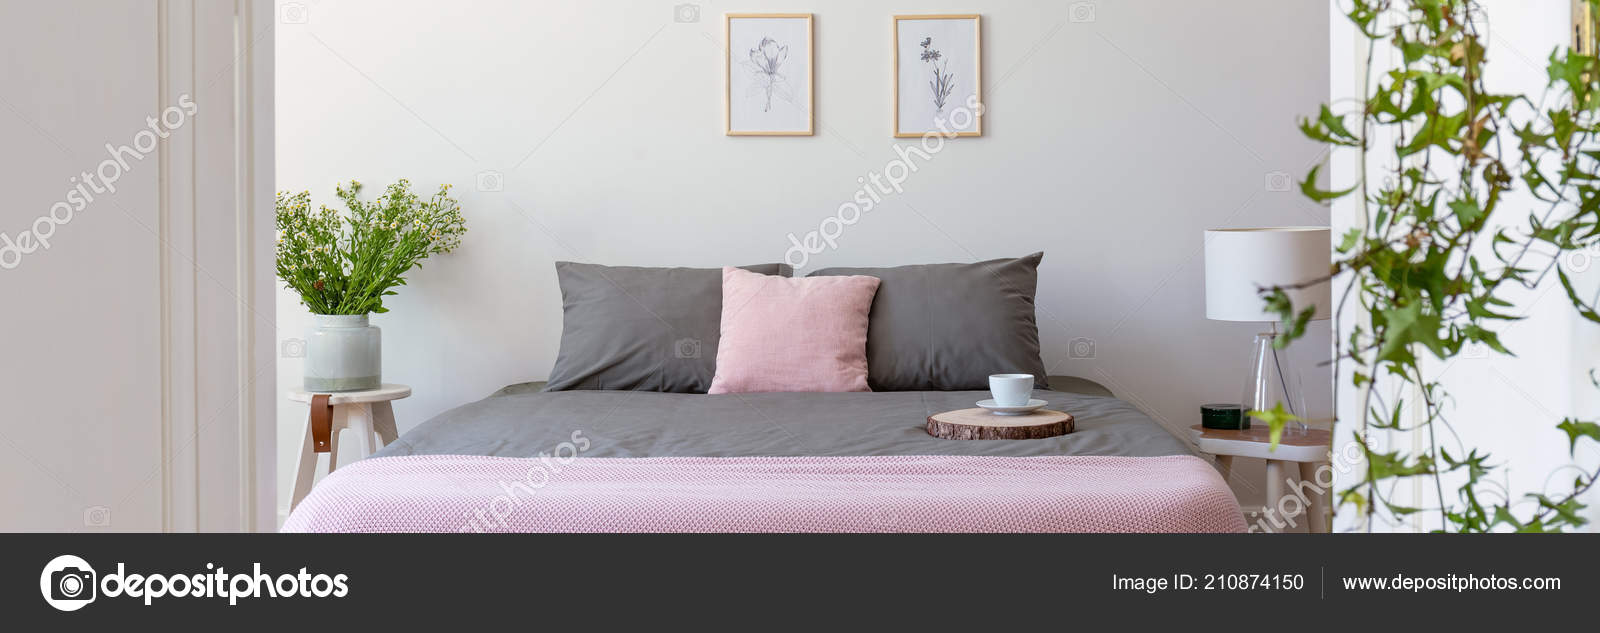 Grau Und Pastell Rosa Bettwasche Auf Doppelbett Mit